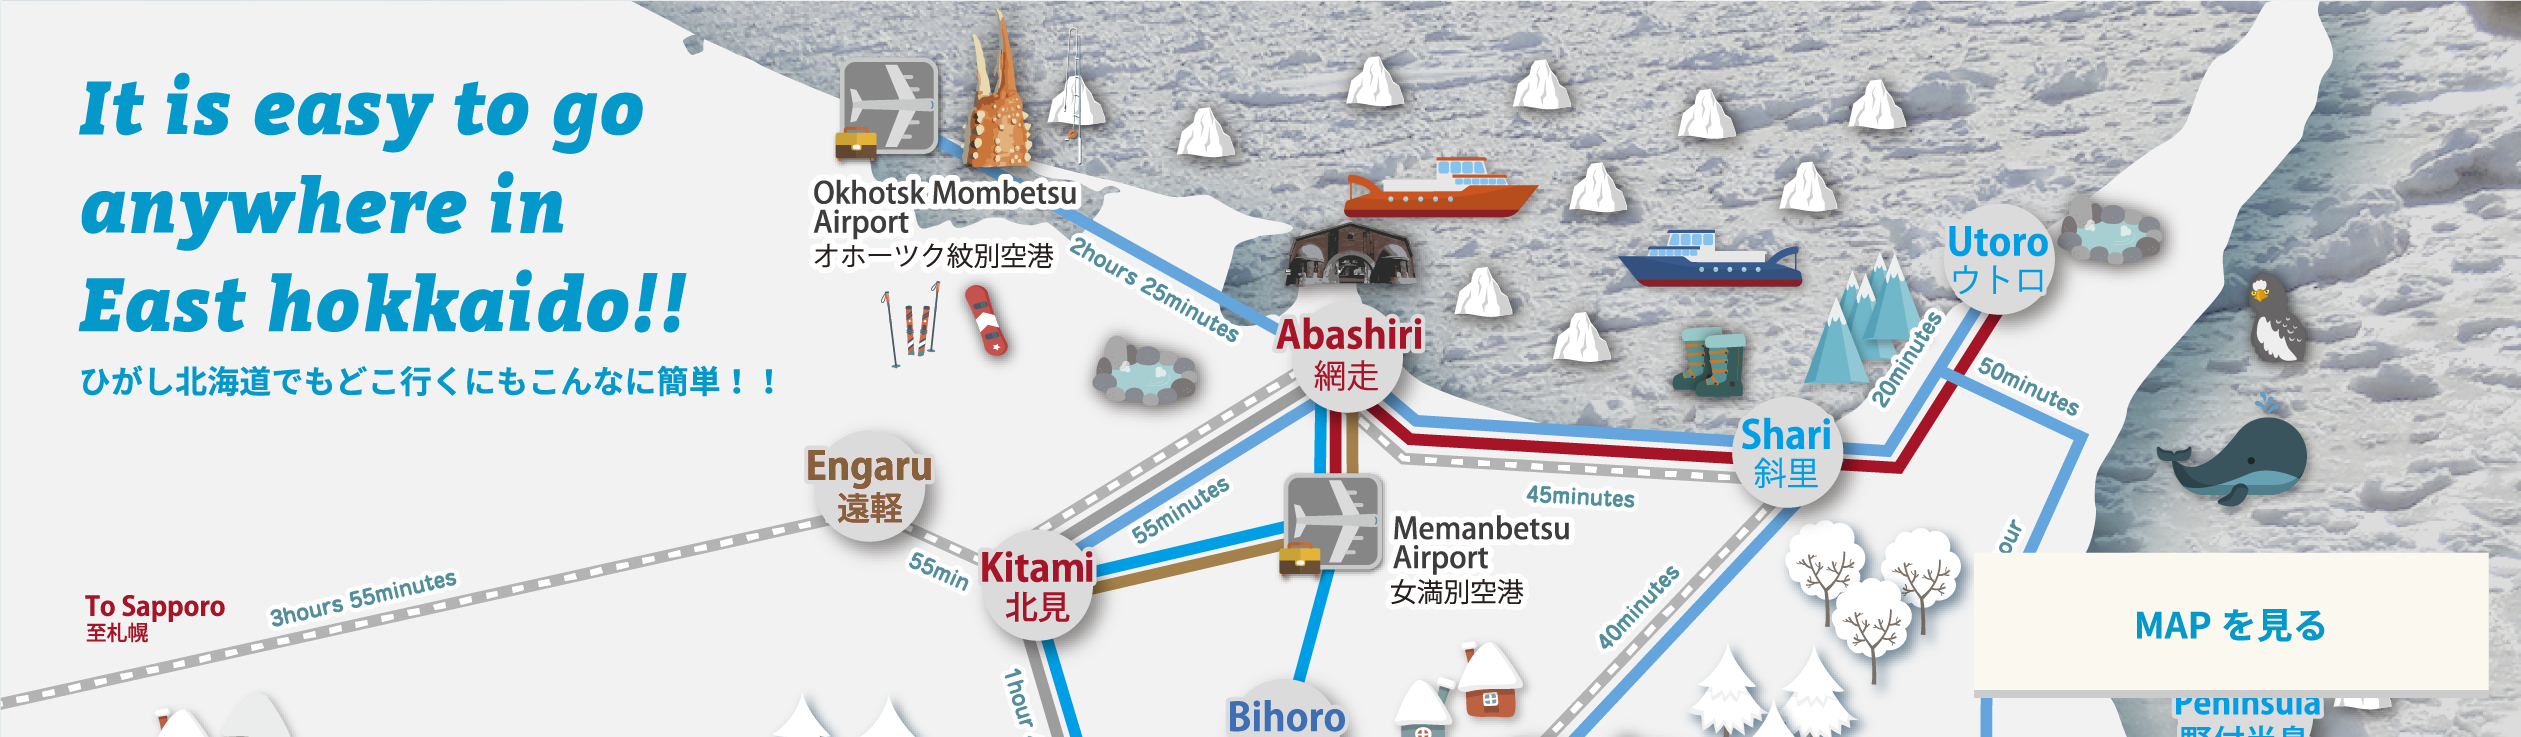 ひがし北海道マップ